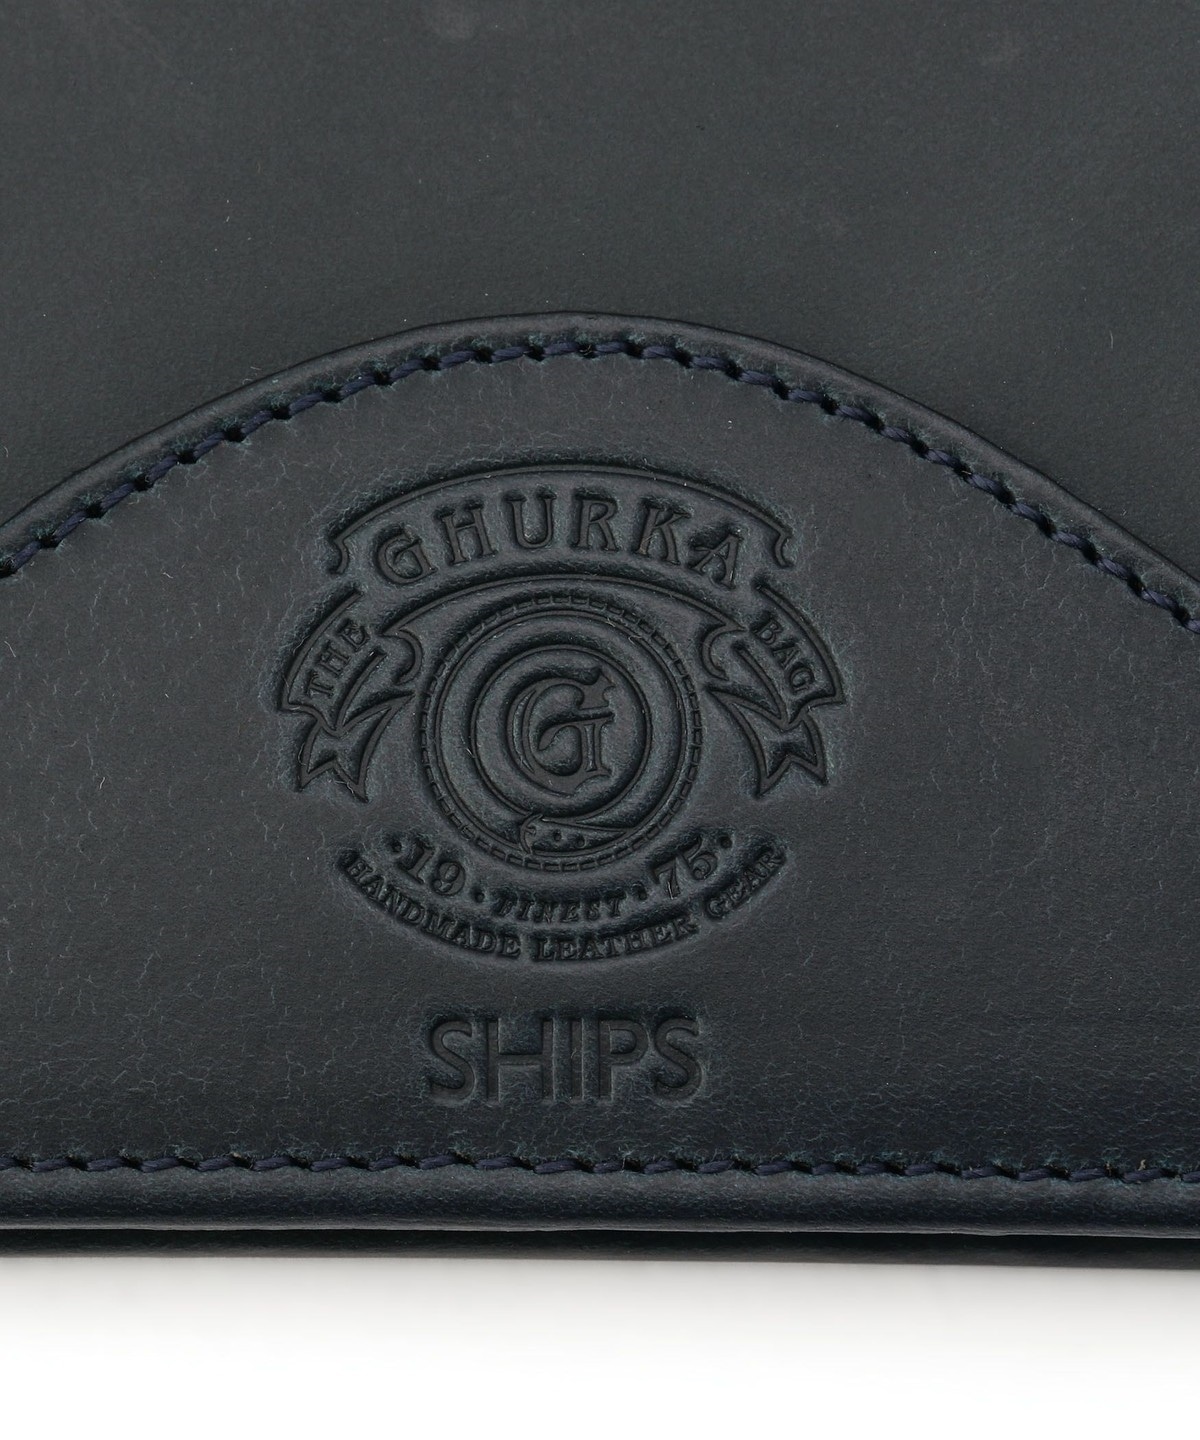 GHURKA(グルカ): SHIPS(シップス) 【別注】 ウォレット(二つ折り財布 